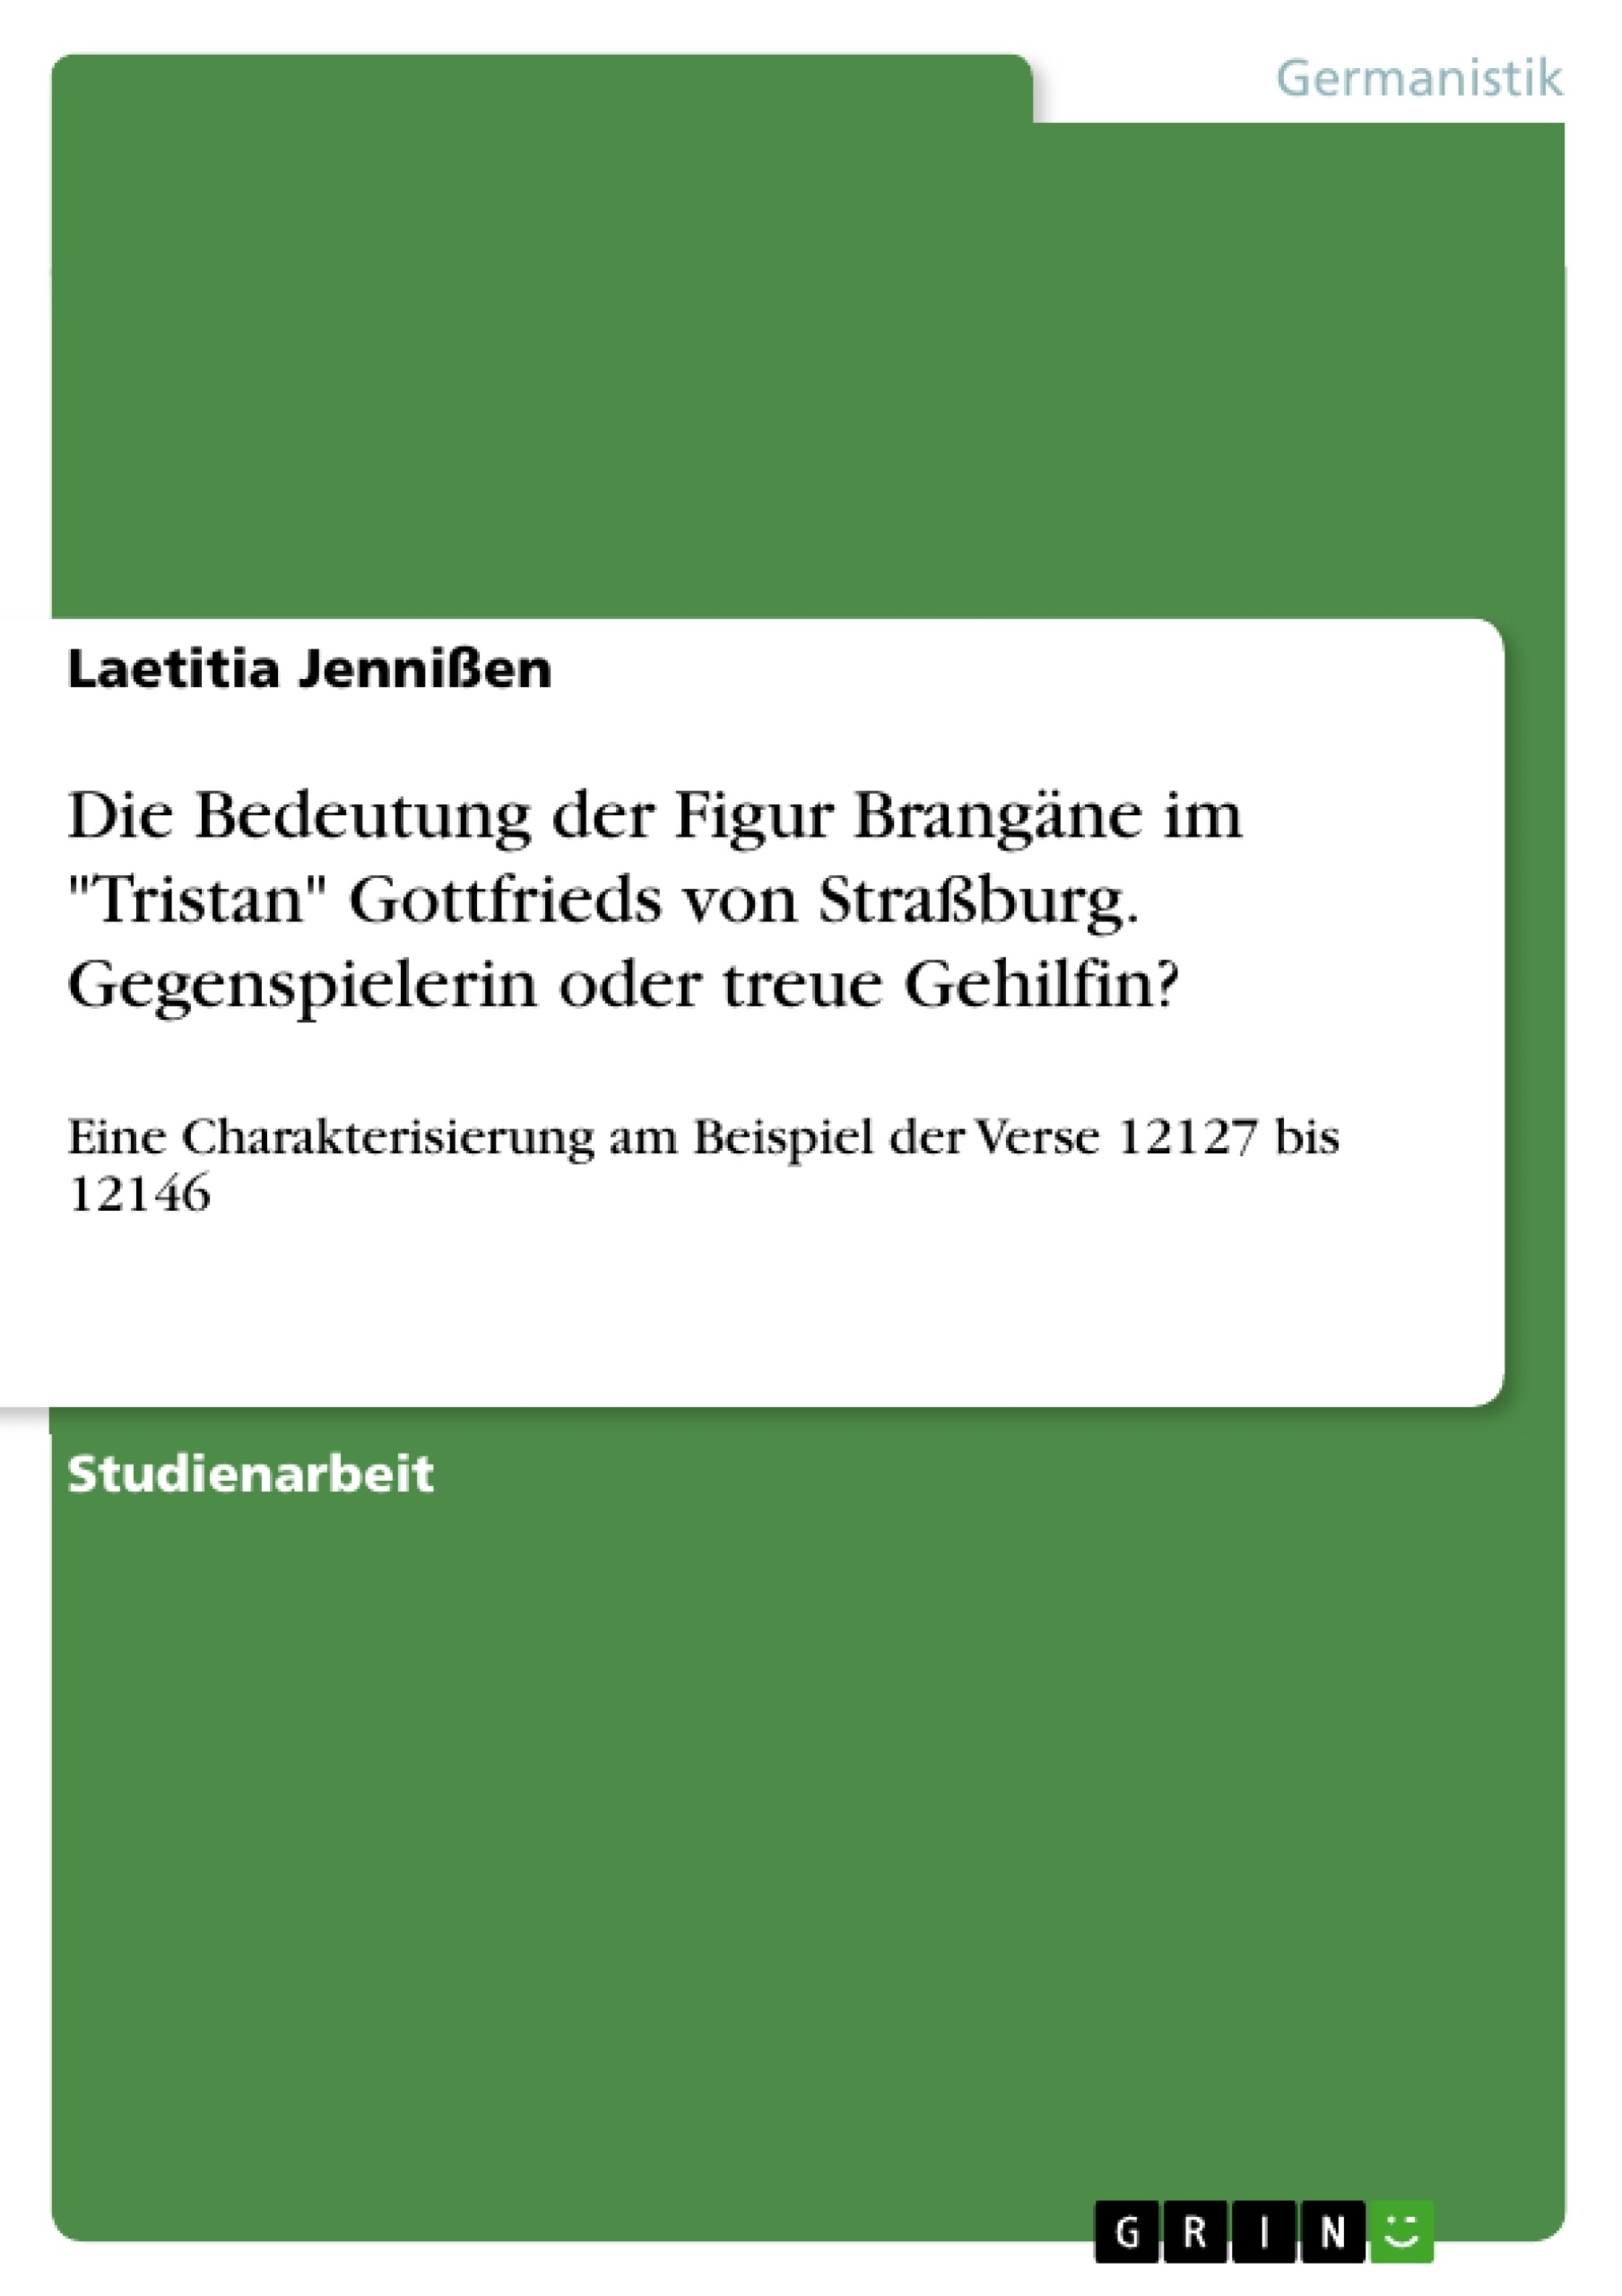 Titel: Die Bedeutung der Figur Brangäne im "Tristan" Gottfrieds von Straßburg. Gegenspielerin oder treue Gehilfin?